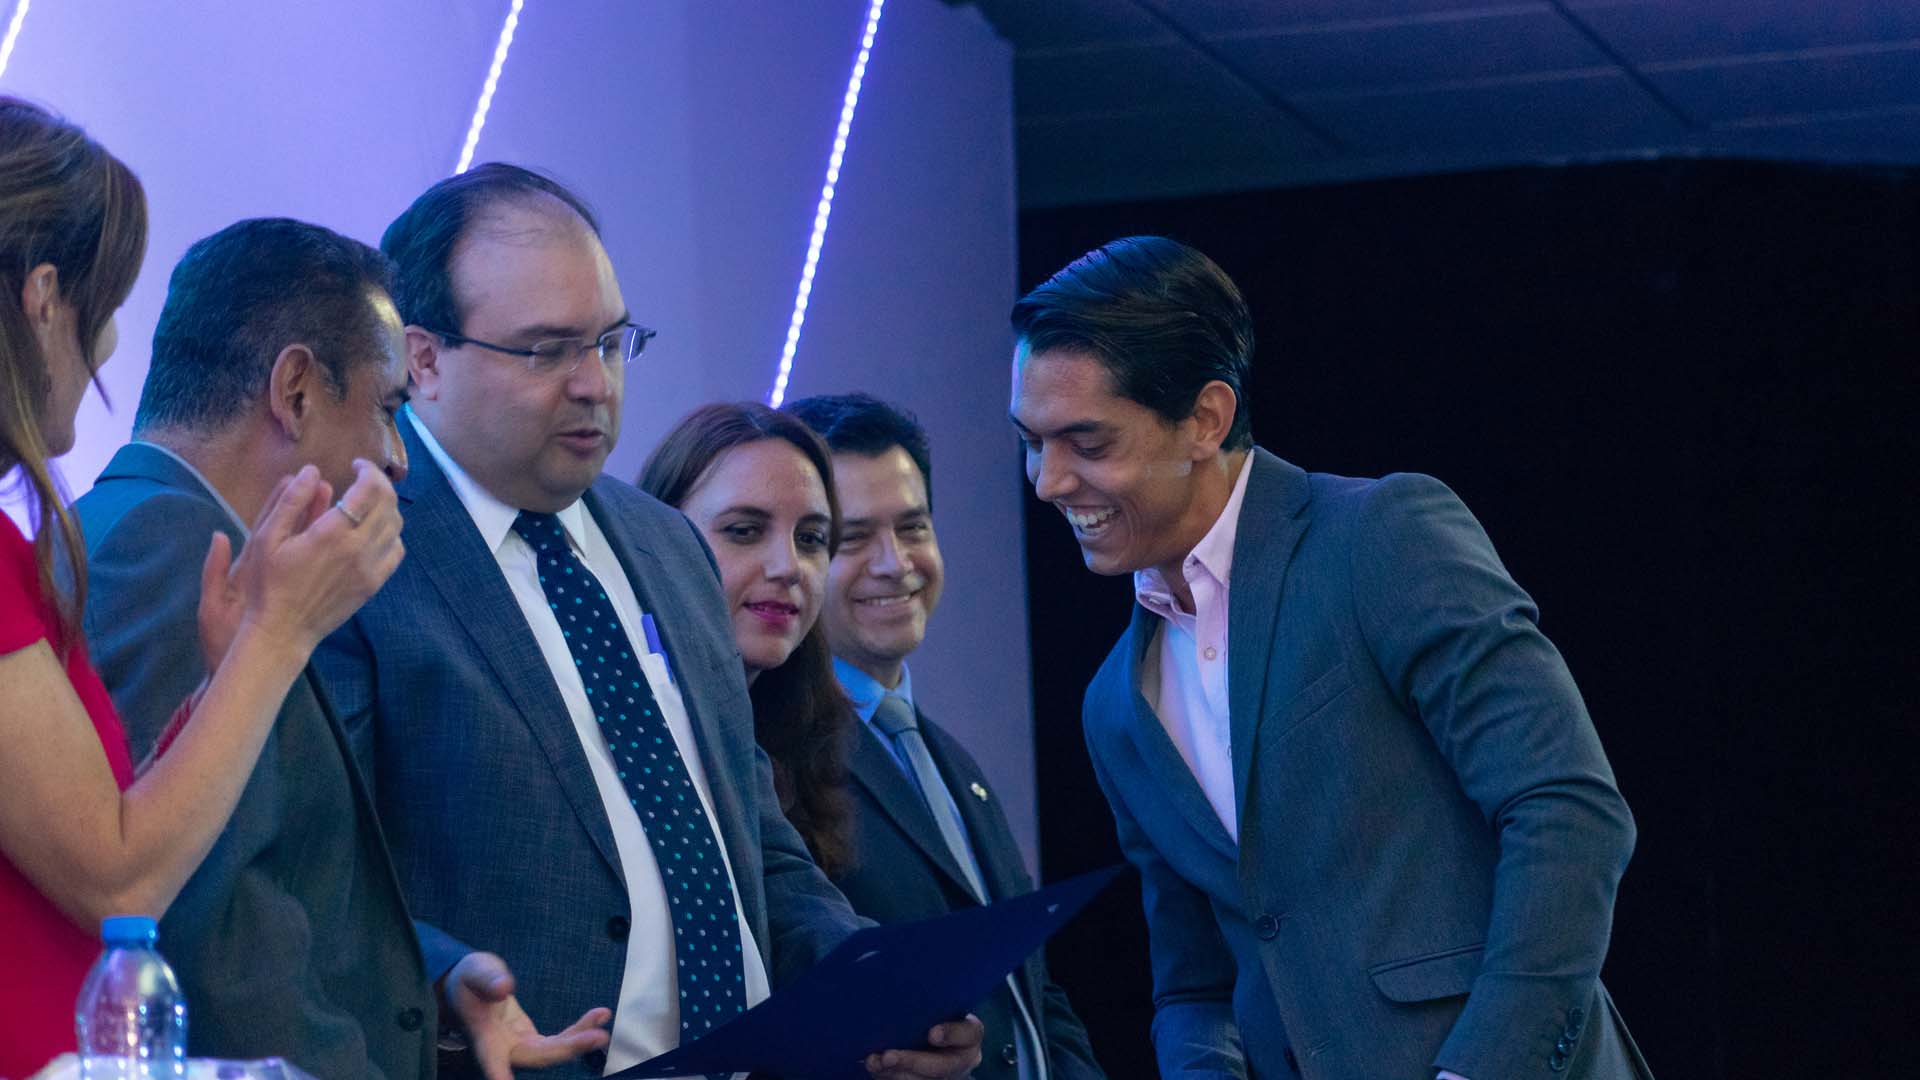 Juan Pablo Osorio, Ganador del Premio a la Excelencia Estudiantil 2019